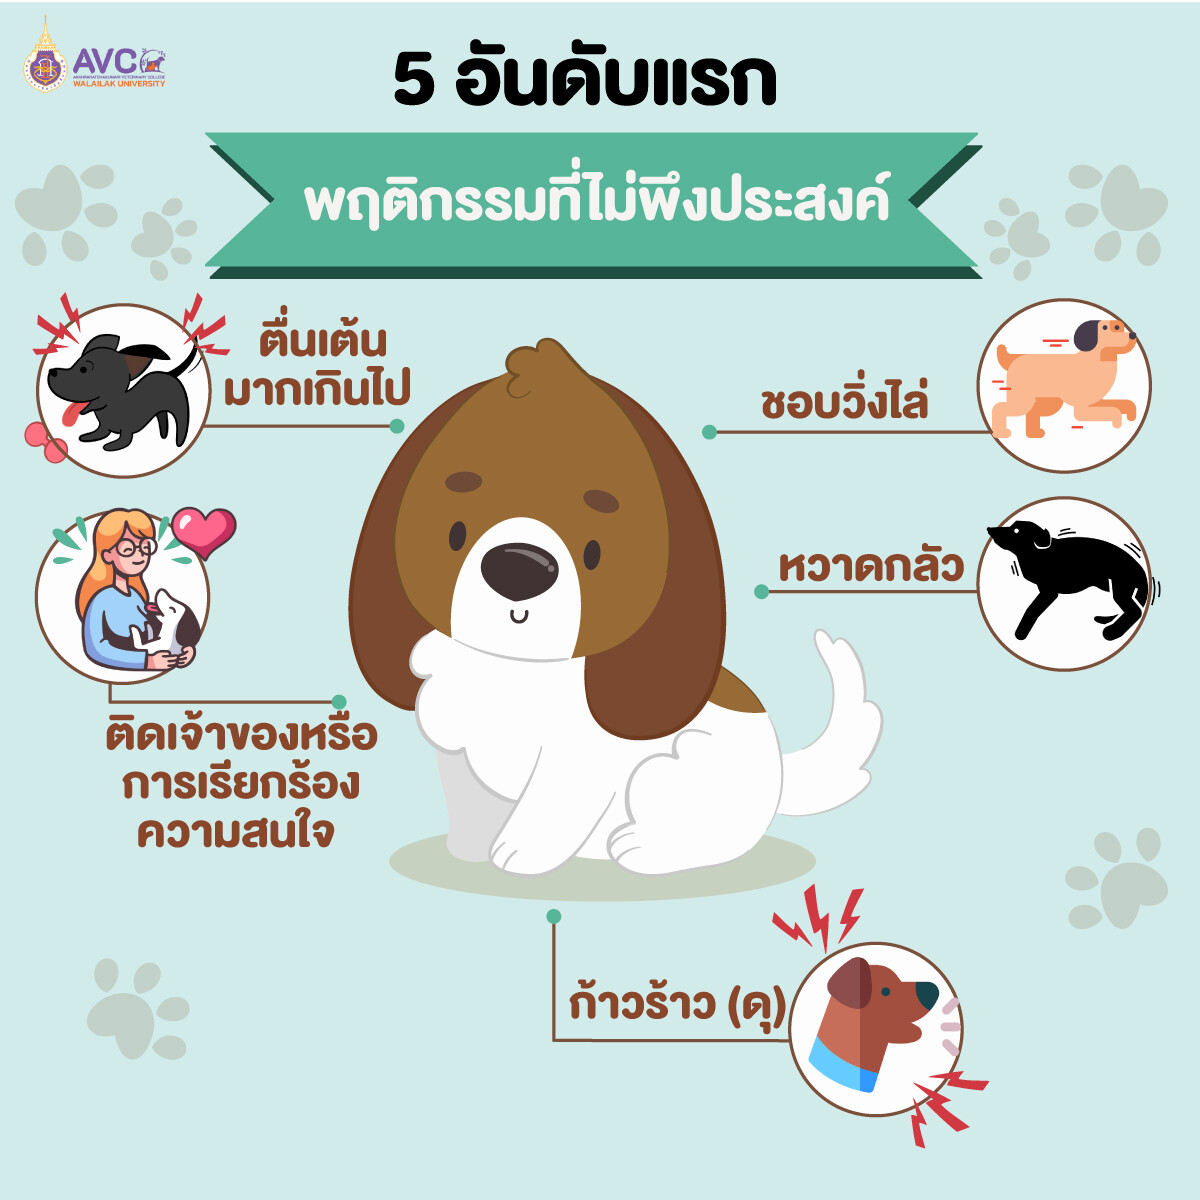 ม.วลัยลักษณ์ เผยผลวิจัยพบน้องหมาไทย มีปัญหาพฤติกรรมไม่พึงประสงค์ค่อนข้างสูง